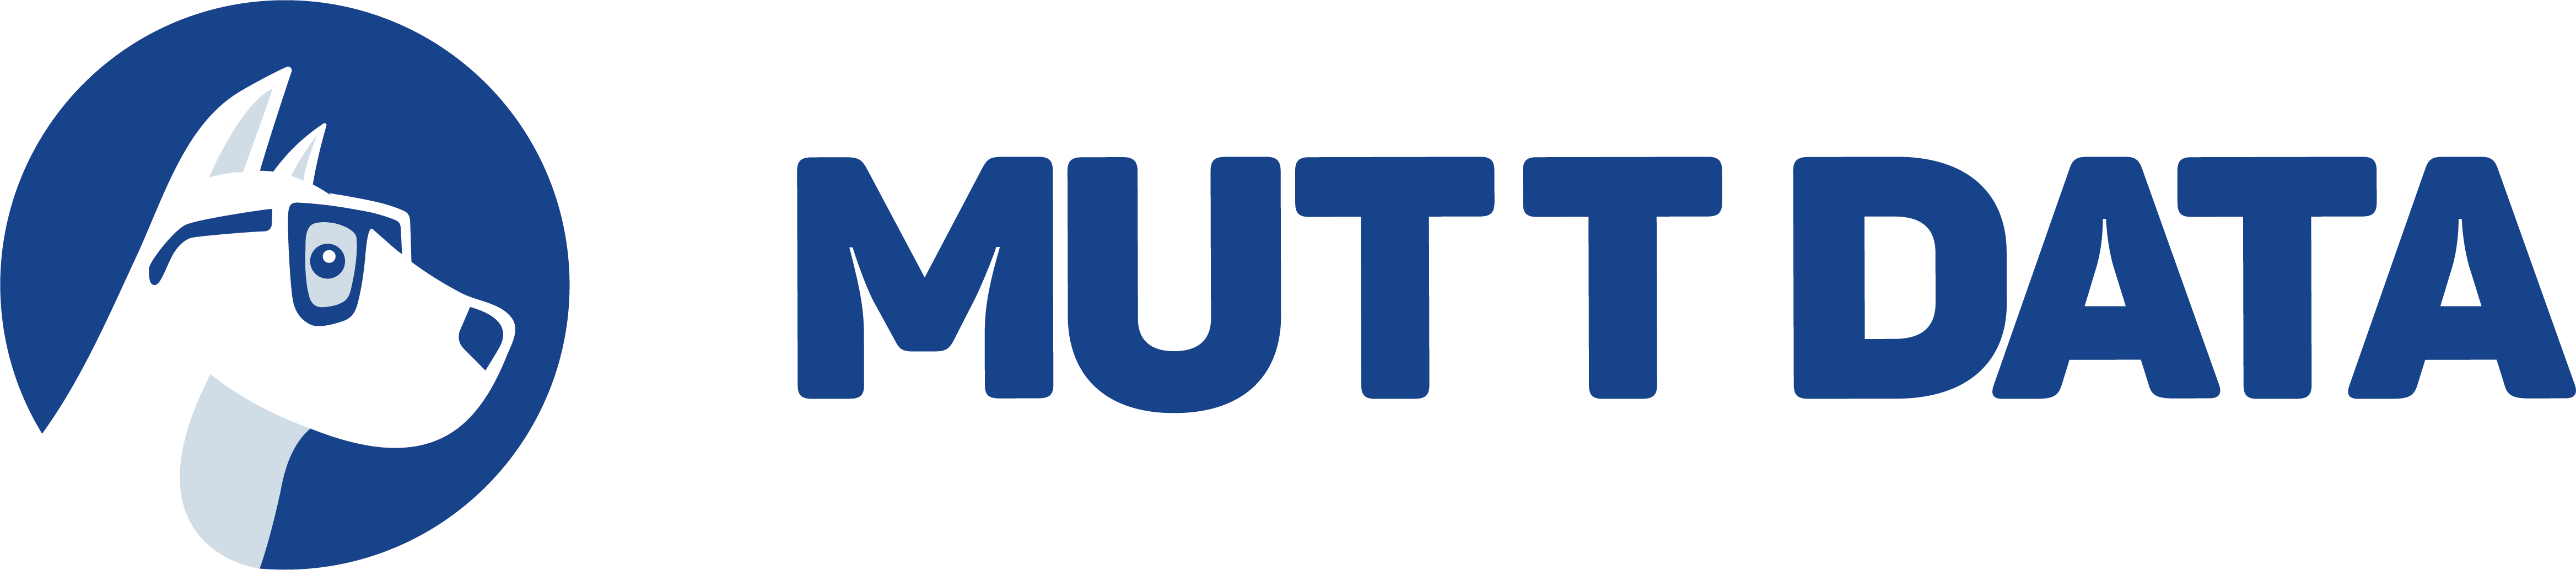 mutt-data-horizontal